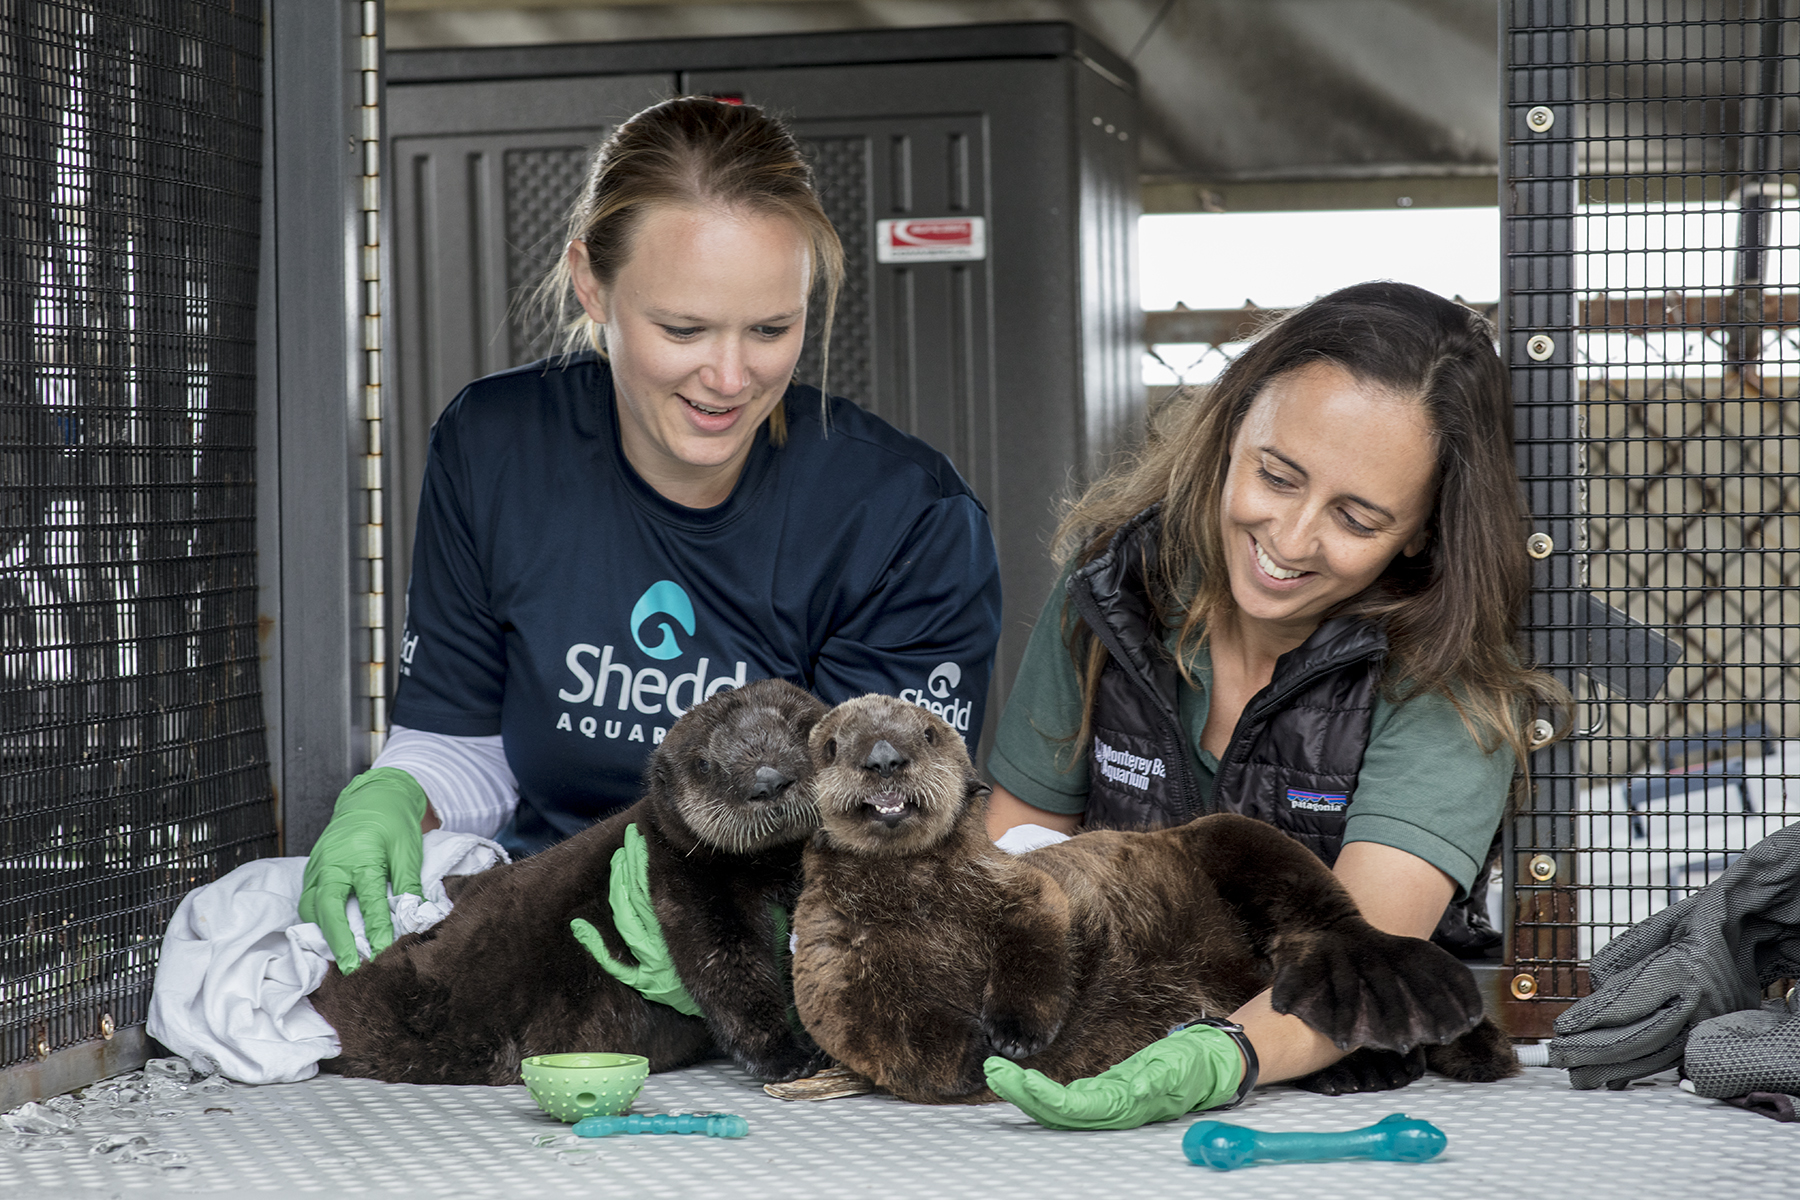 Baby otters Shedd Aquarium